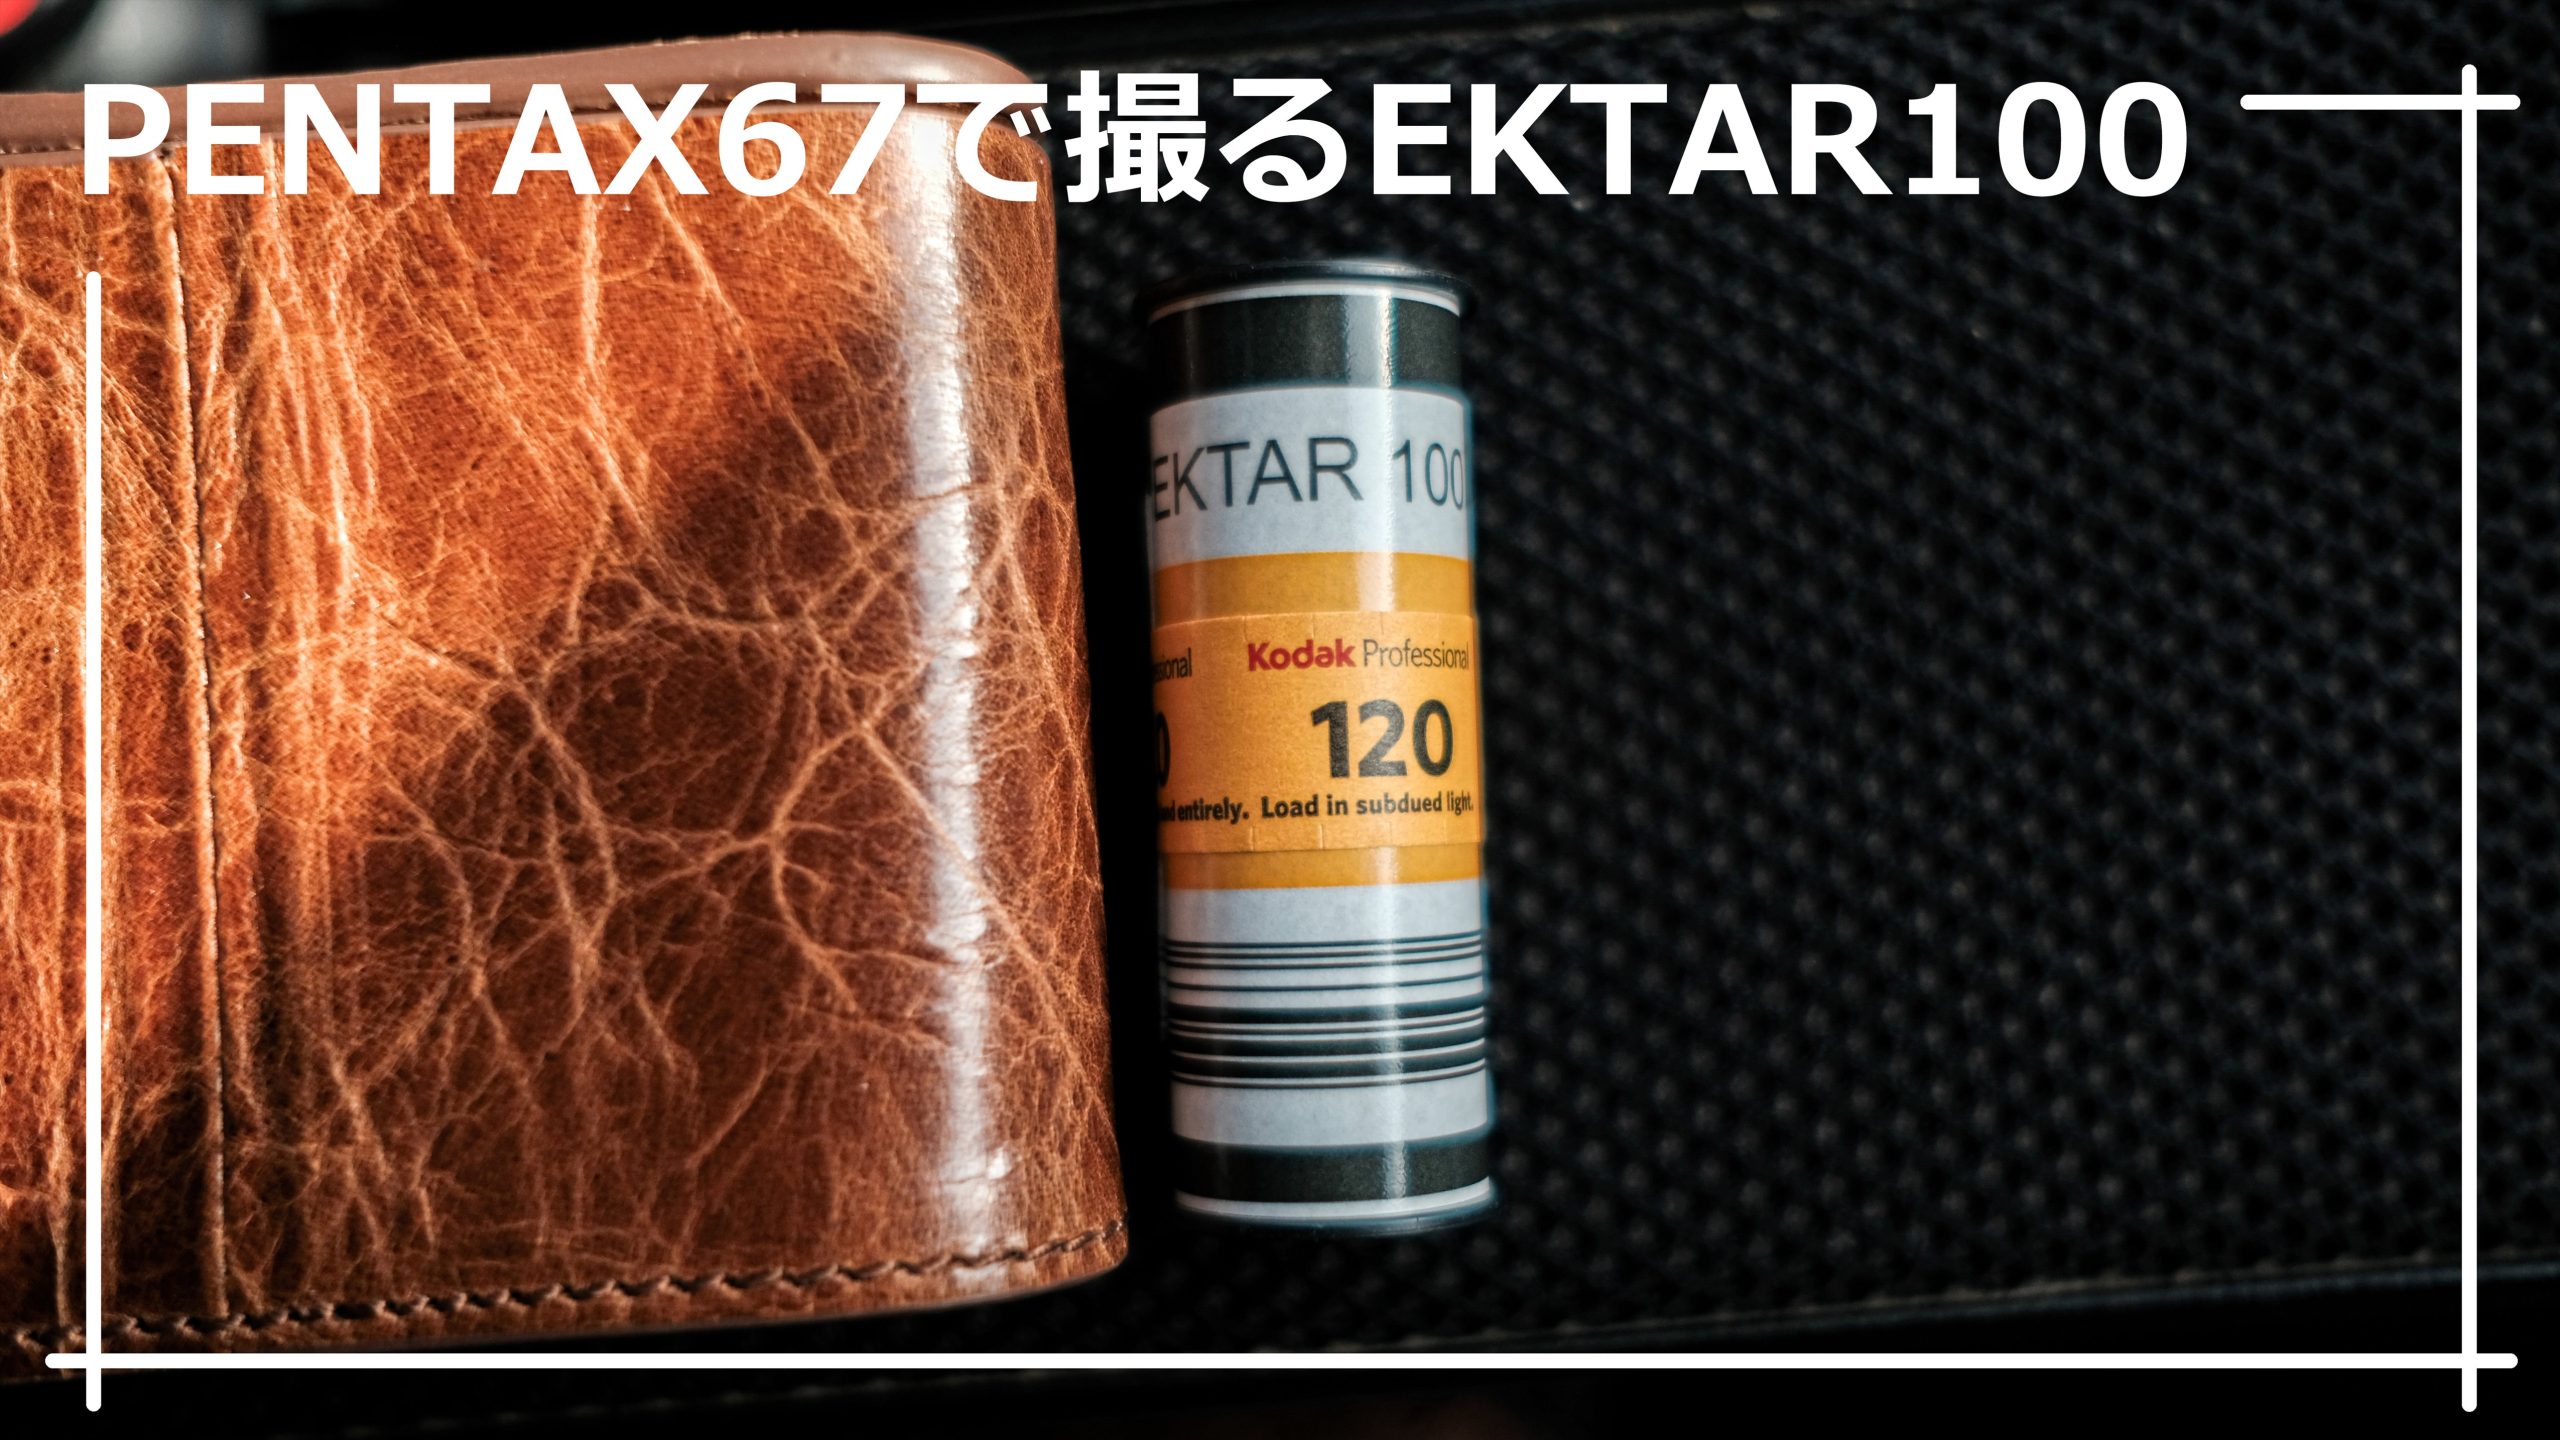 EKTAR 100（Kodak） ブローニーフィルム – PENTAX 67